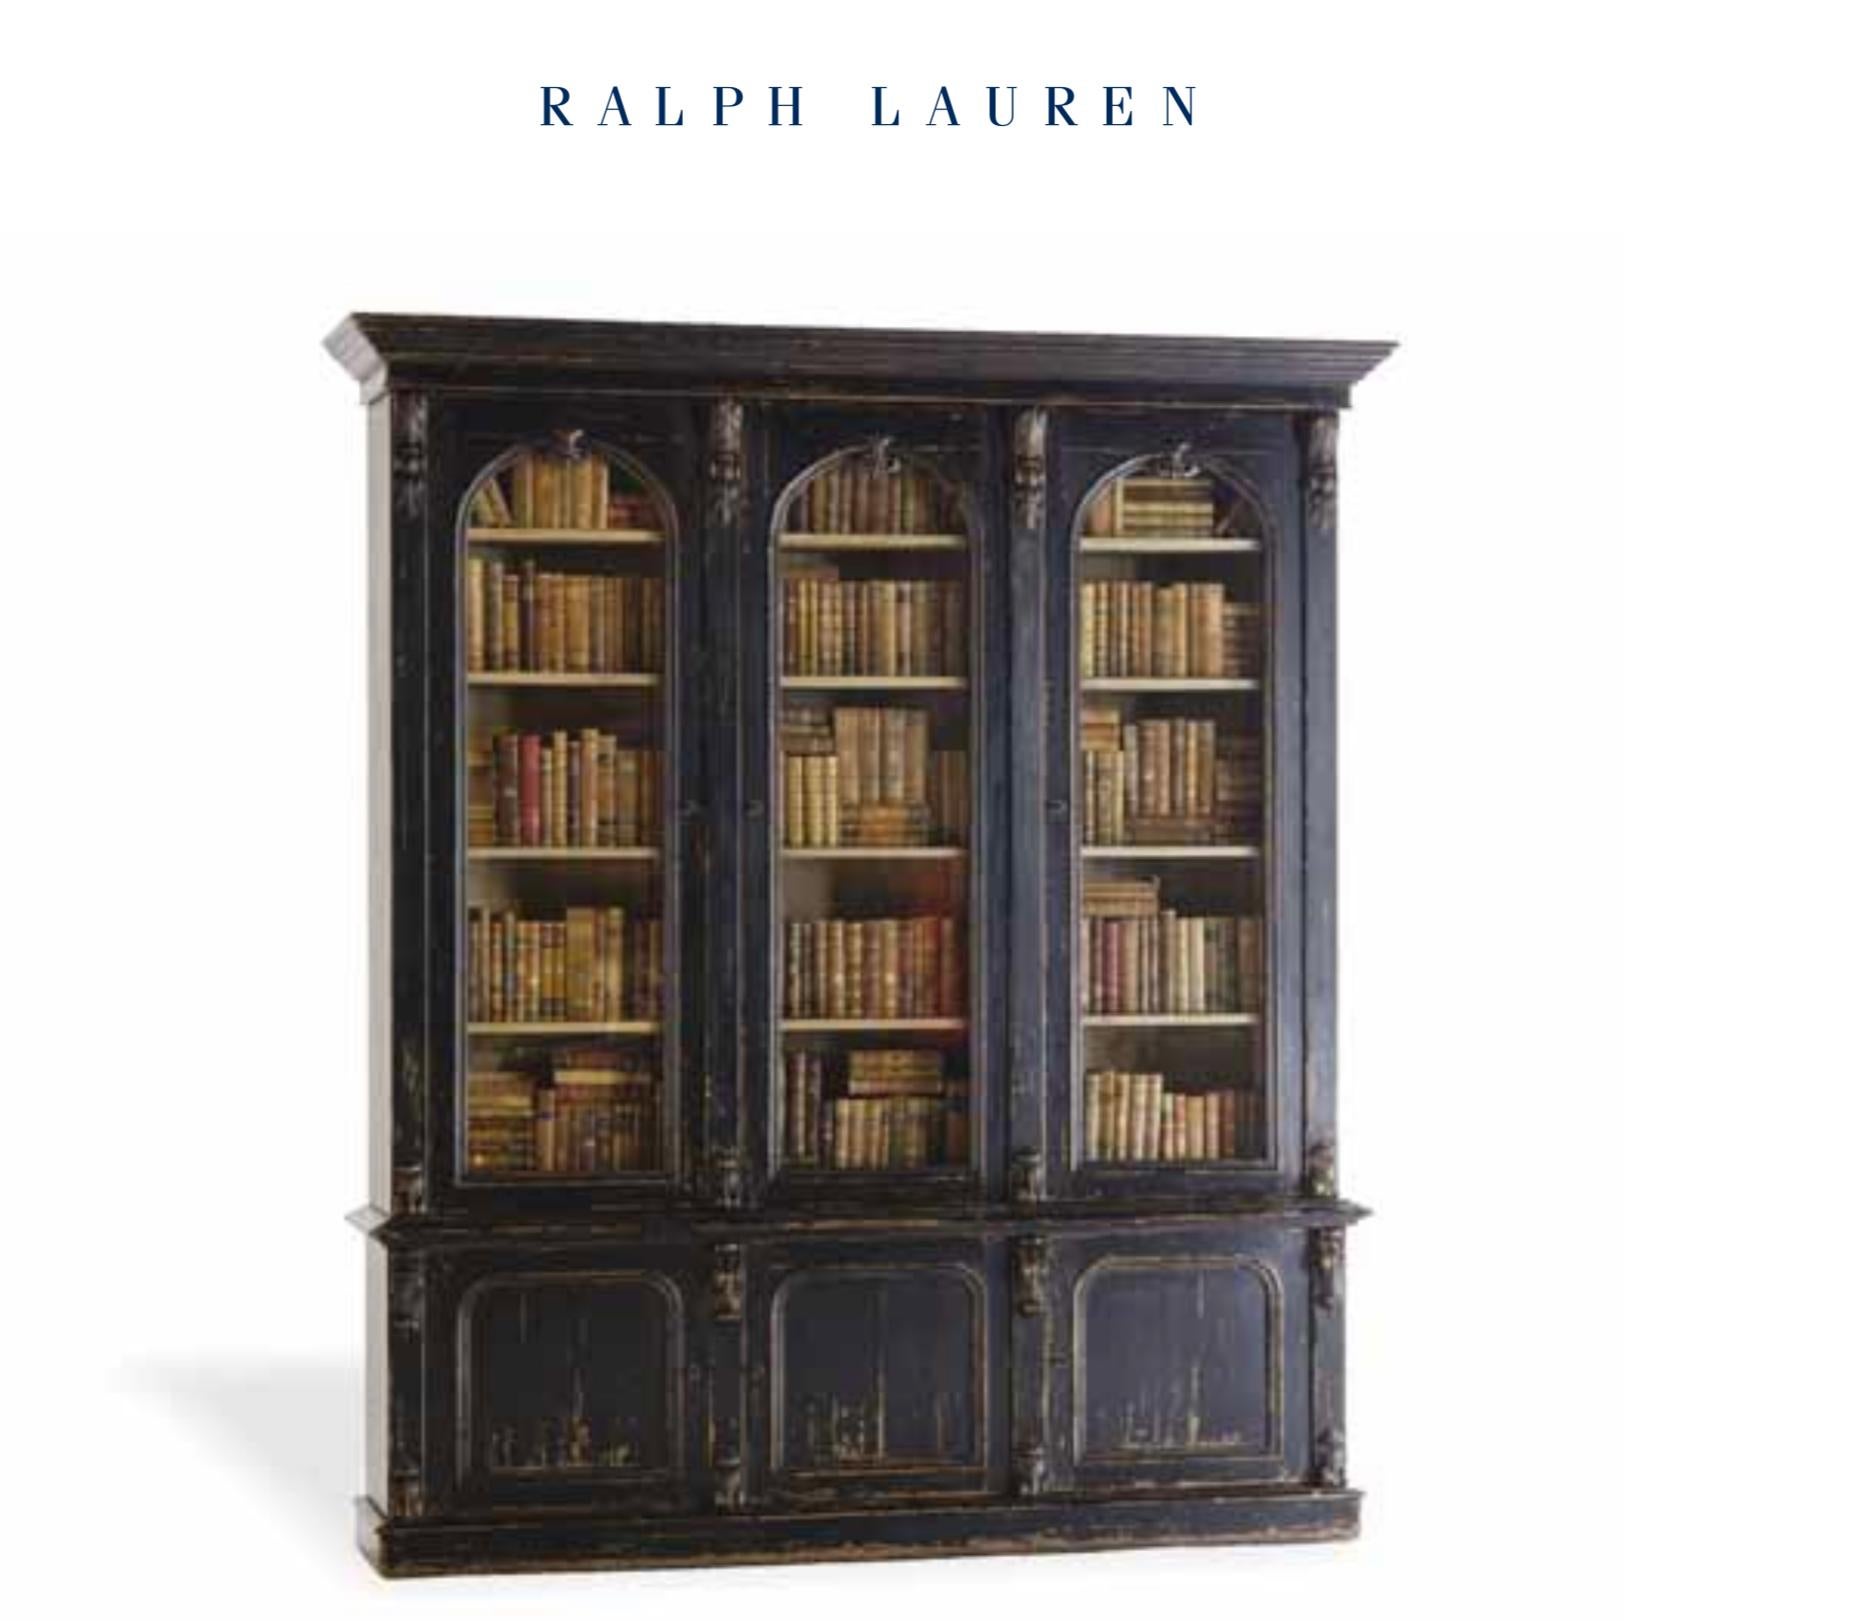 Unknown Ebonized Walnut Bookcase Cabinet Victorian Renaissance Revival RL Van Thiel & Co